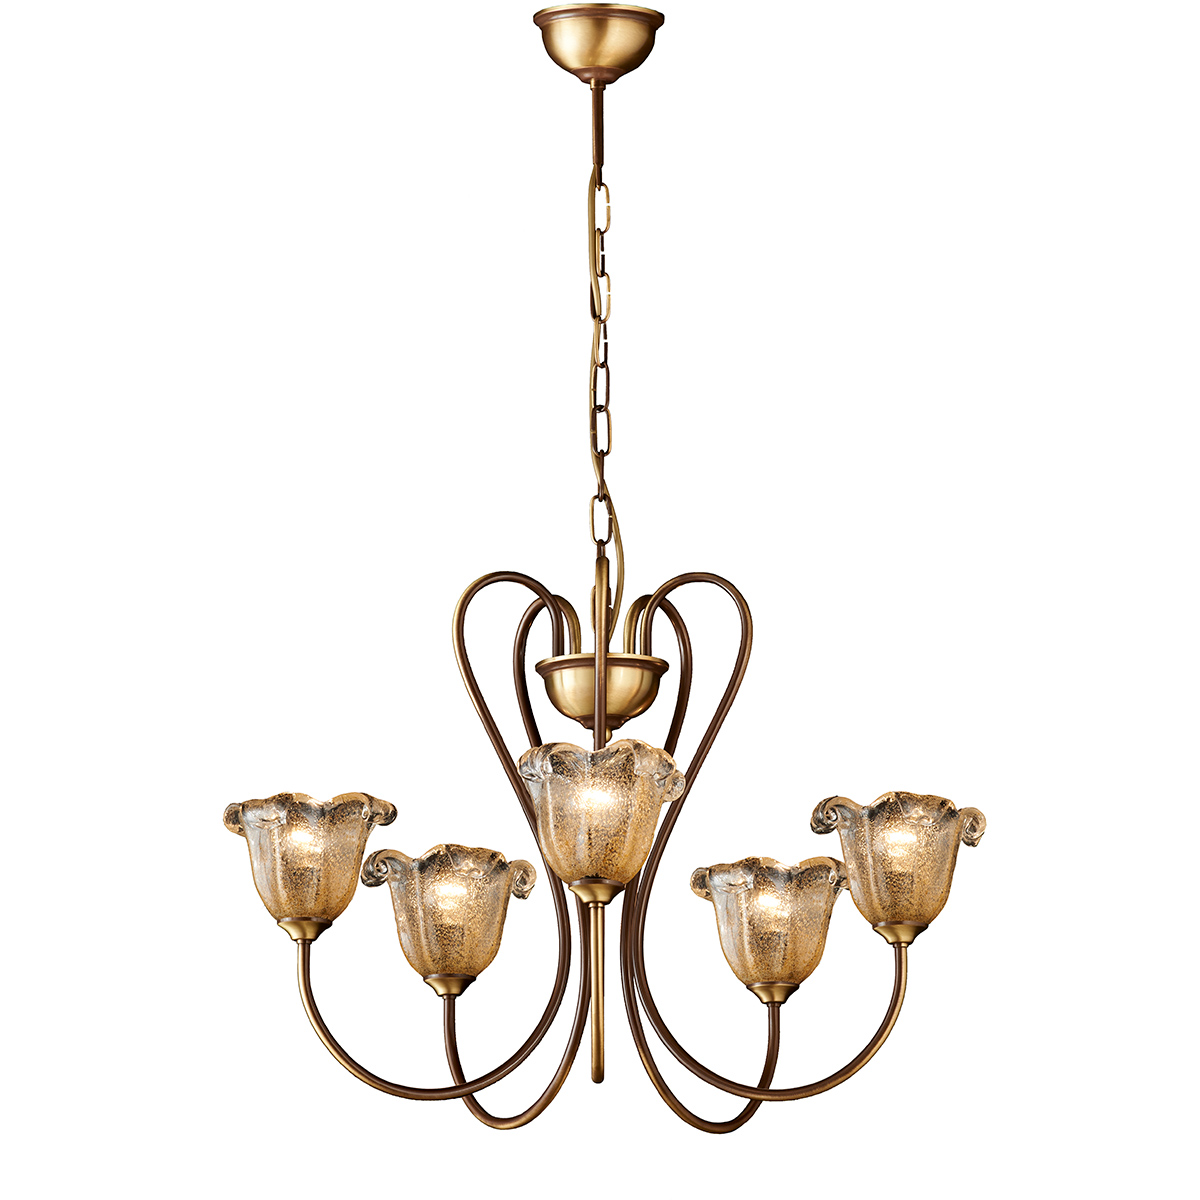 Κλασικό πολύφωτο με μελί κρύσταλλα Μουράνο ΝΑΞΟΣ-1 5-bulb chandelier with amber Murano crystals